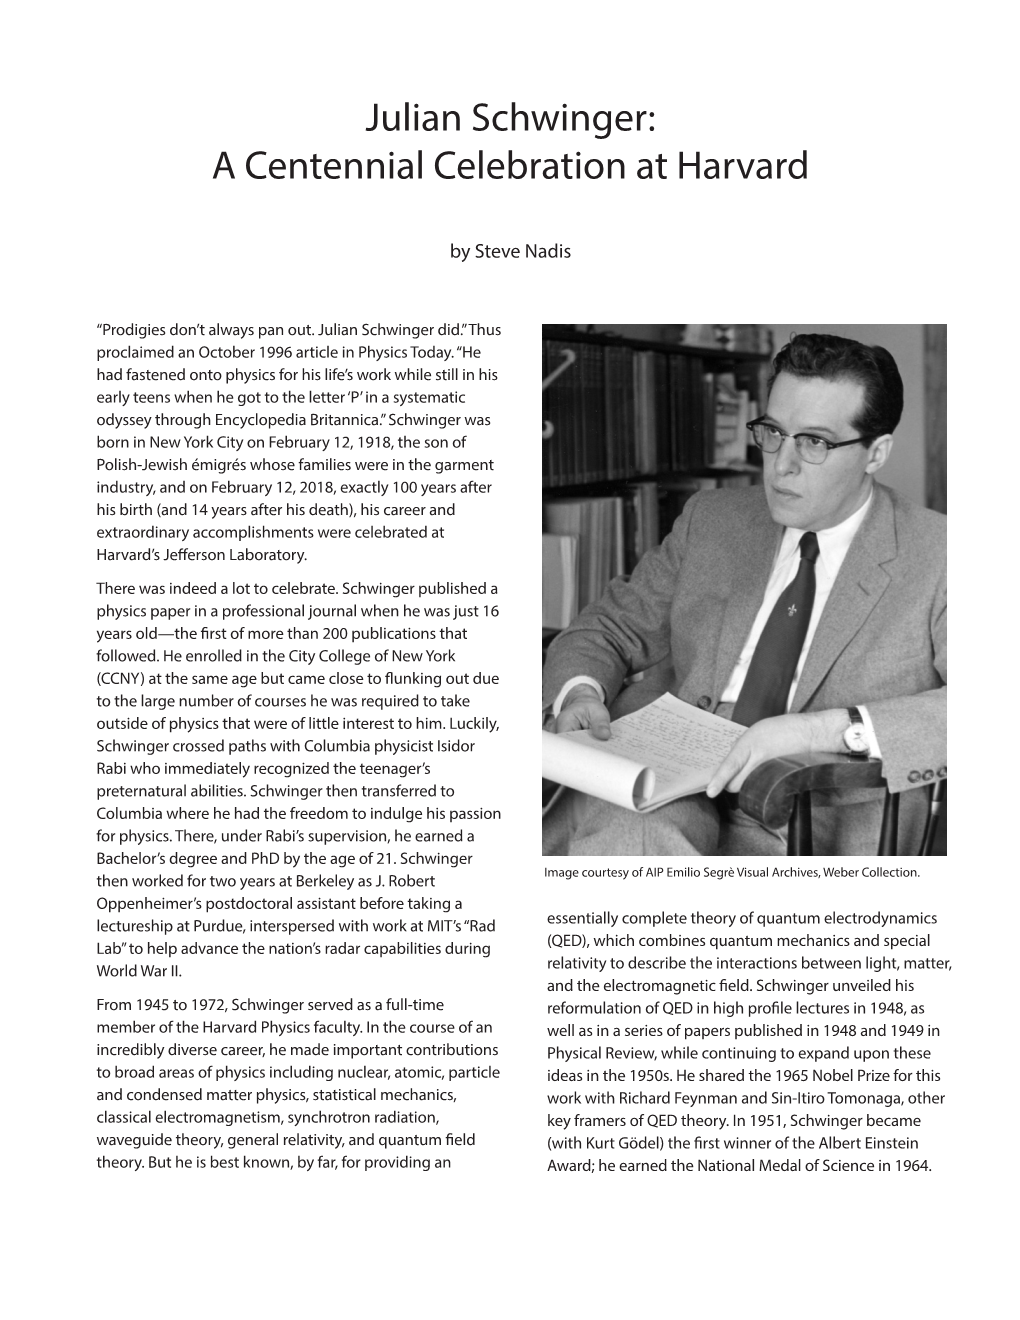 Julian Schwinger: a Centennial Celebration at Harvard